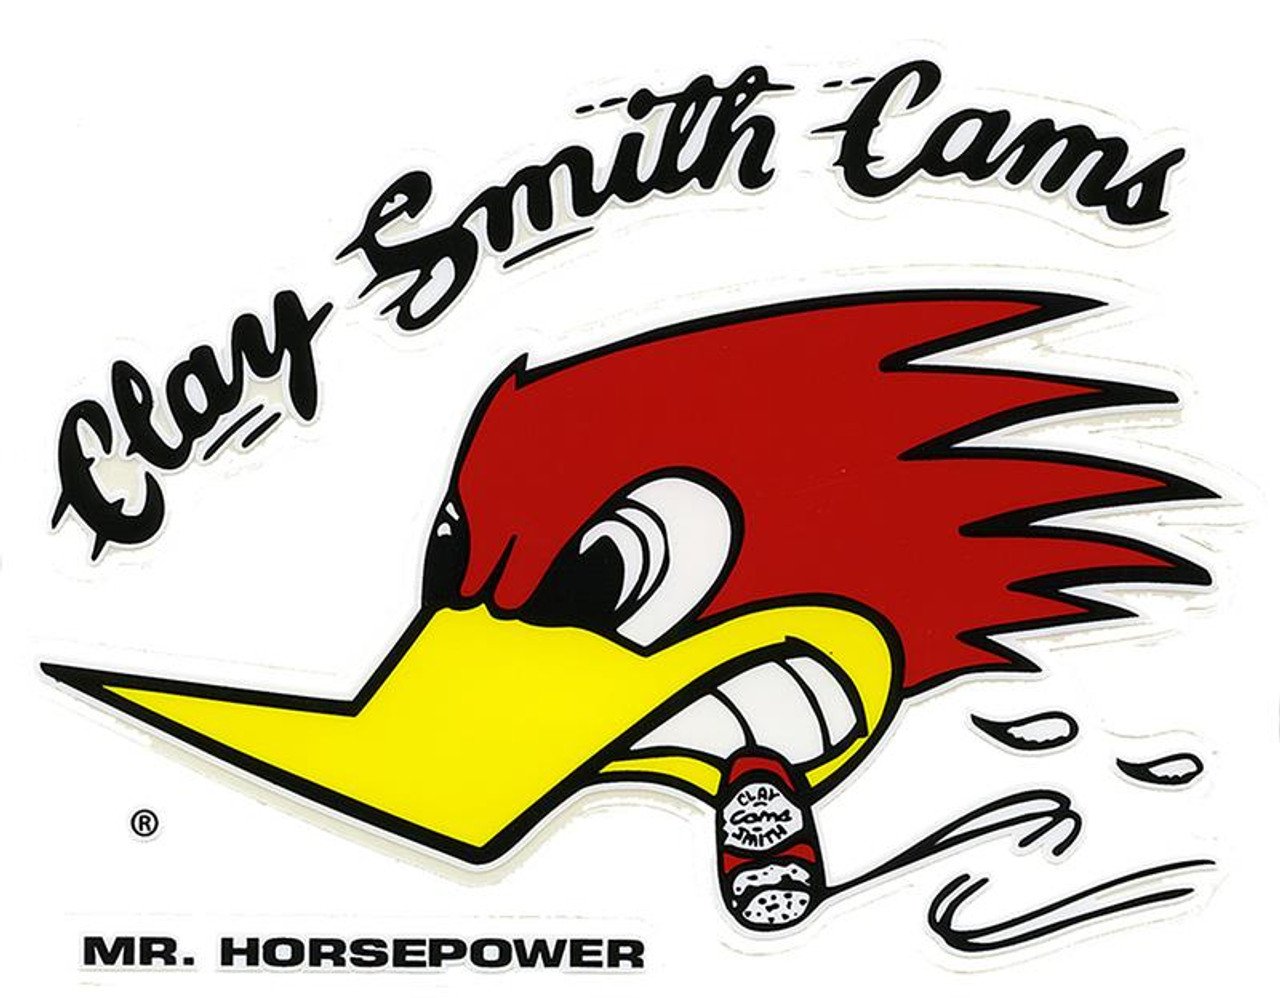 Clay Smith Cams Mr. Horsepower Medium Decal